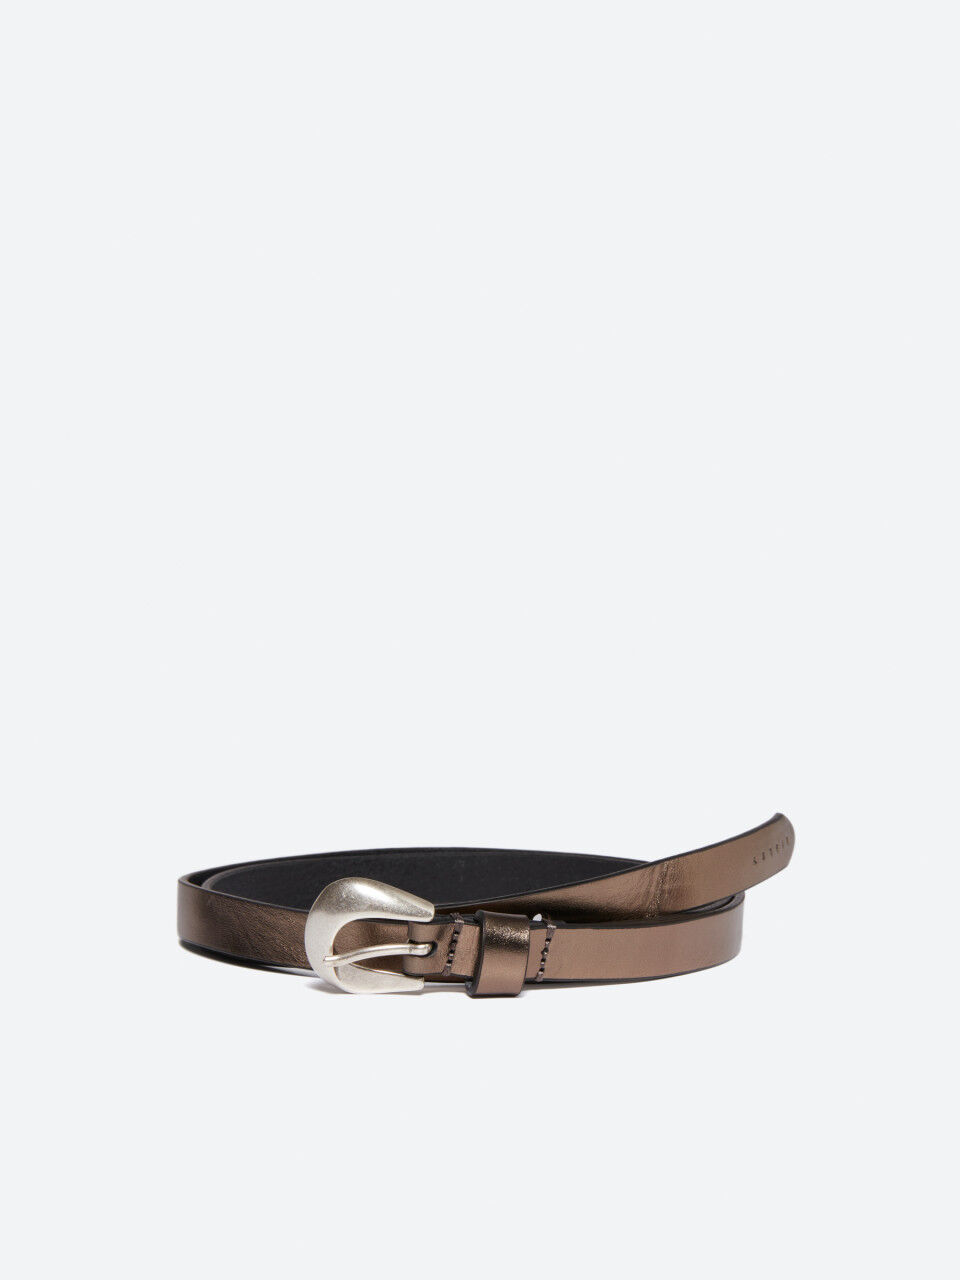 Foil leather belt